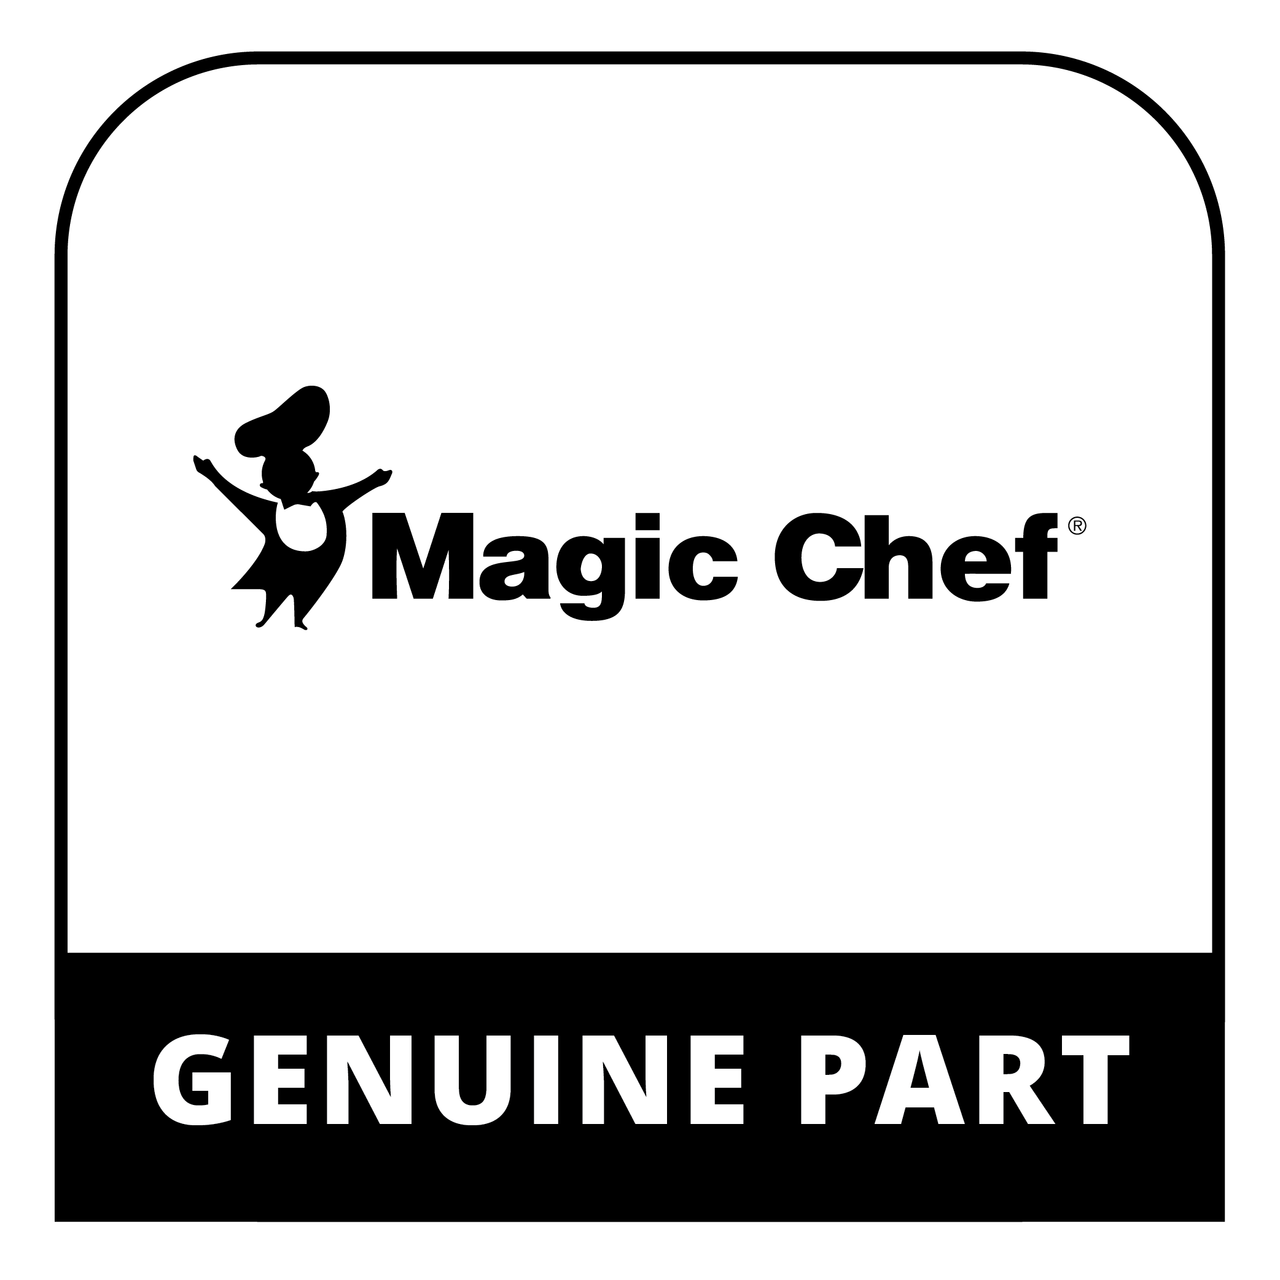 Magic Chef P0000001679161 - DISPLAY PCB (MCSTCW16W4/S4) - Genuine Magic Chef Part